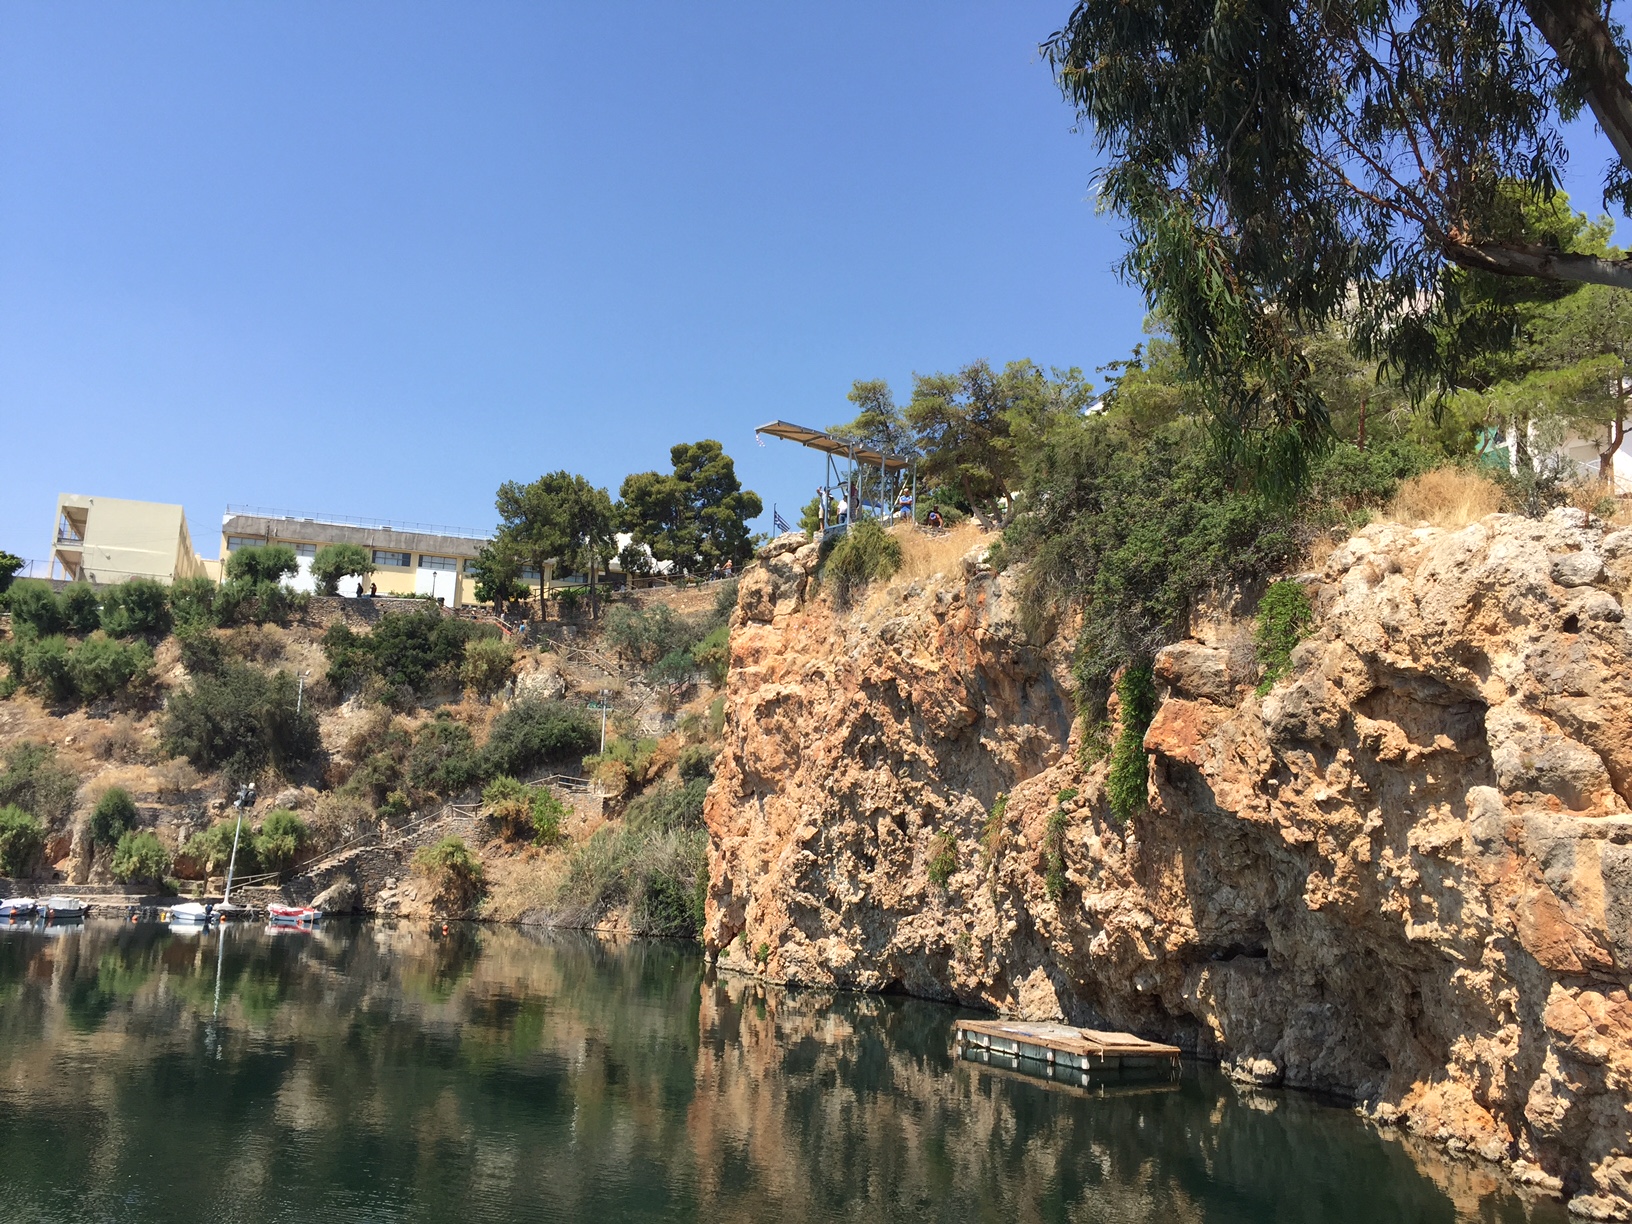 Βουτιές από τα 20 μέτρα στο Agios Nikolaos Cliff diving 2017 (vid)